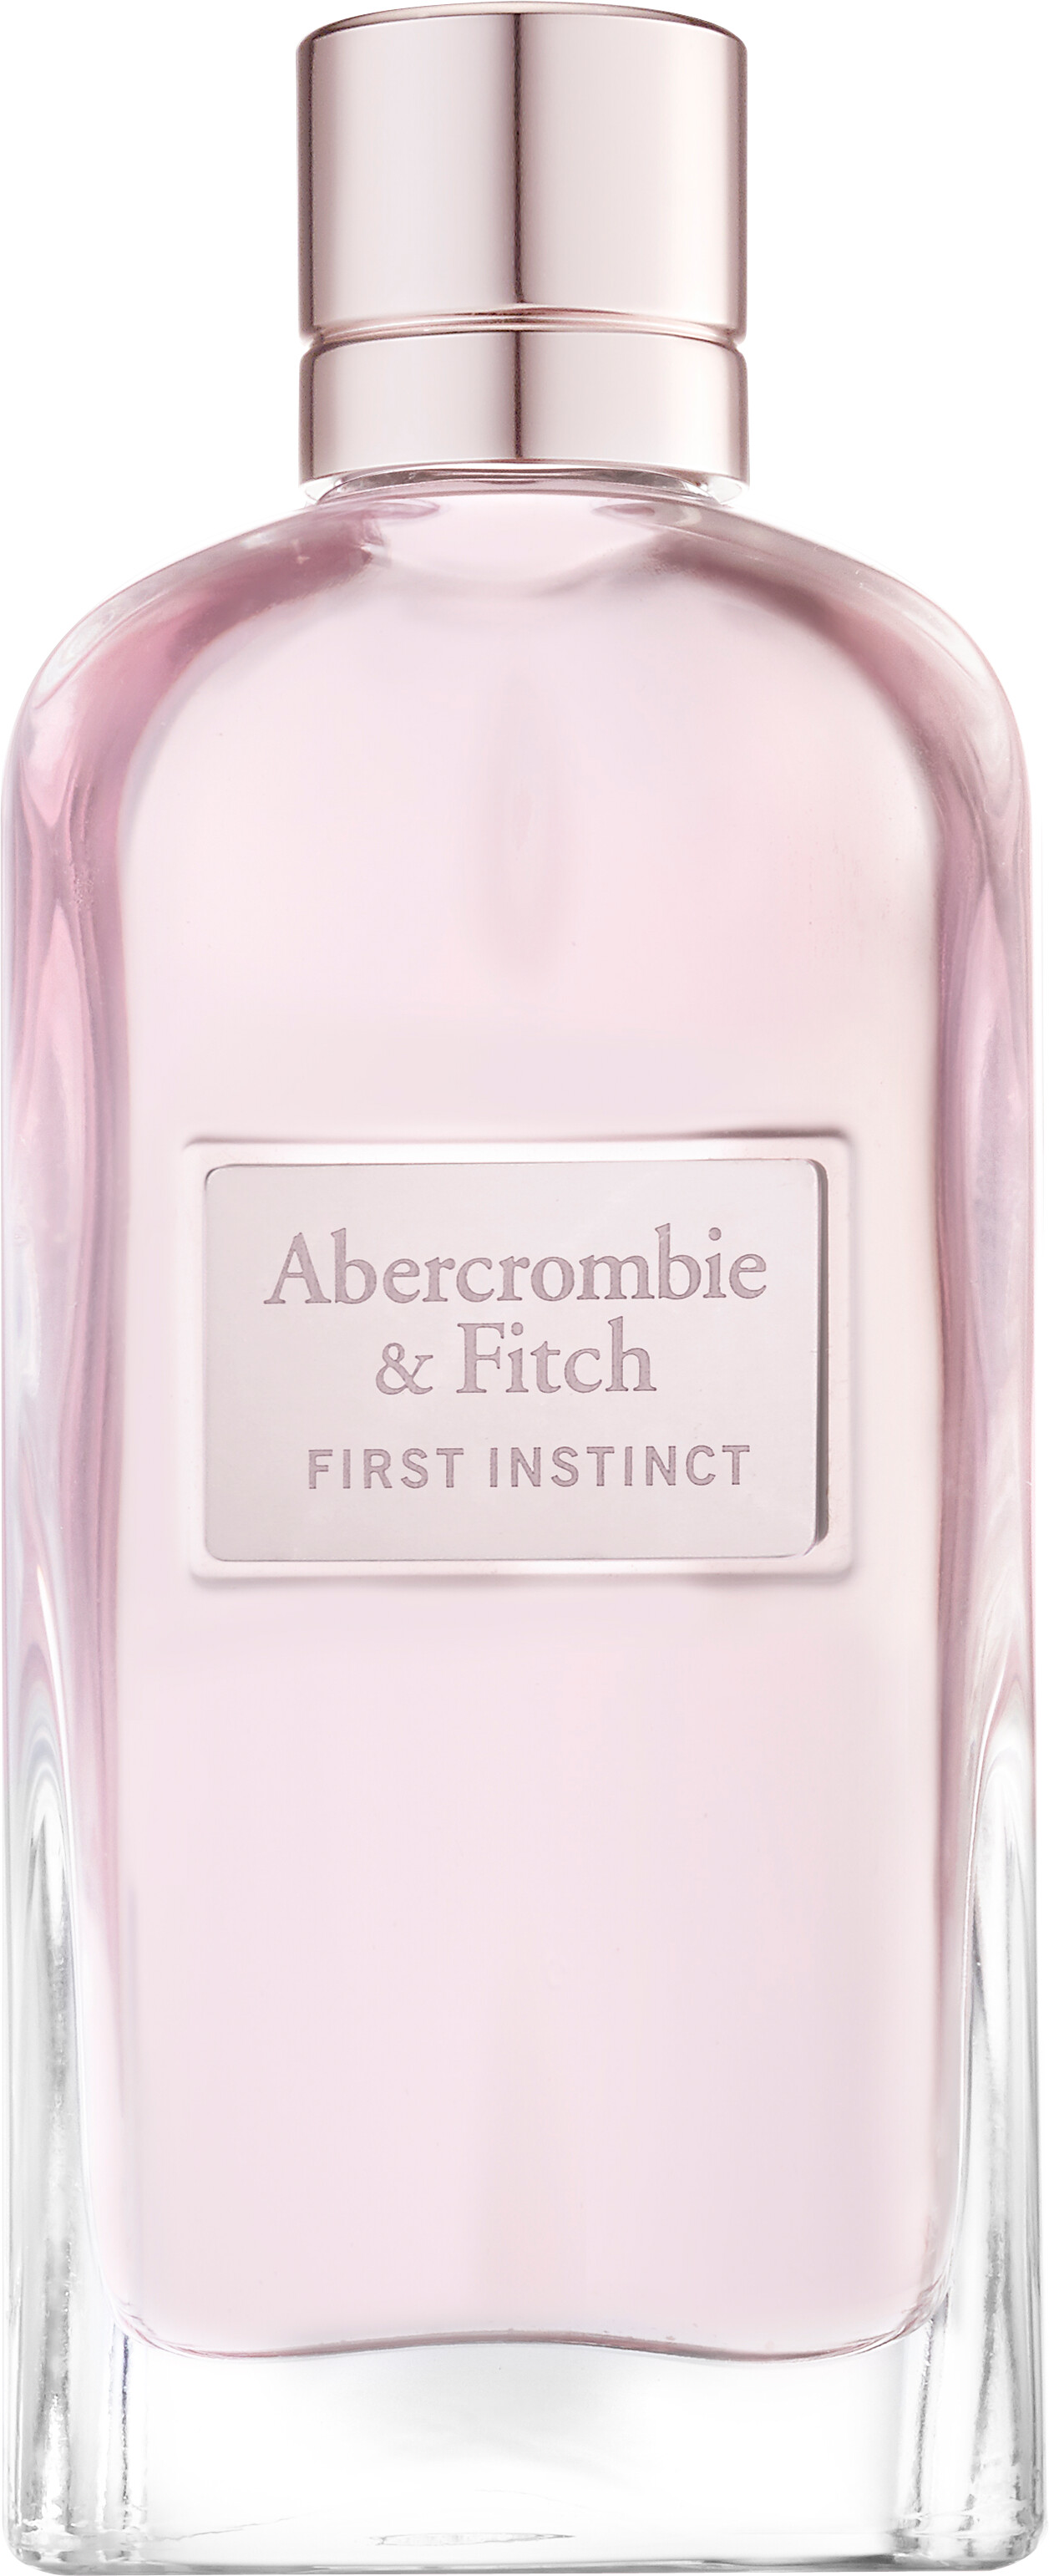 abercrombie & fitch first instinct woman Eau de Parfum 100 ml  